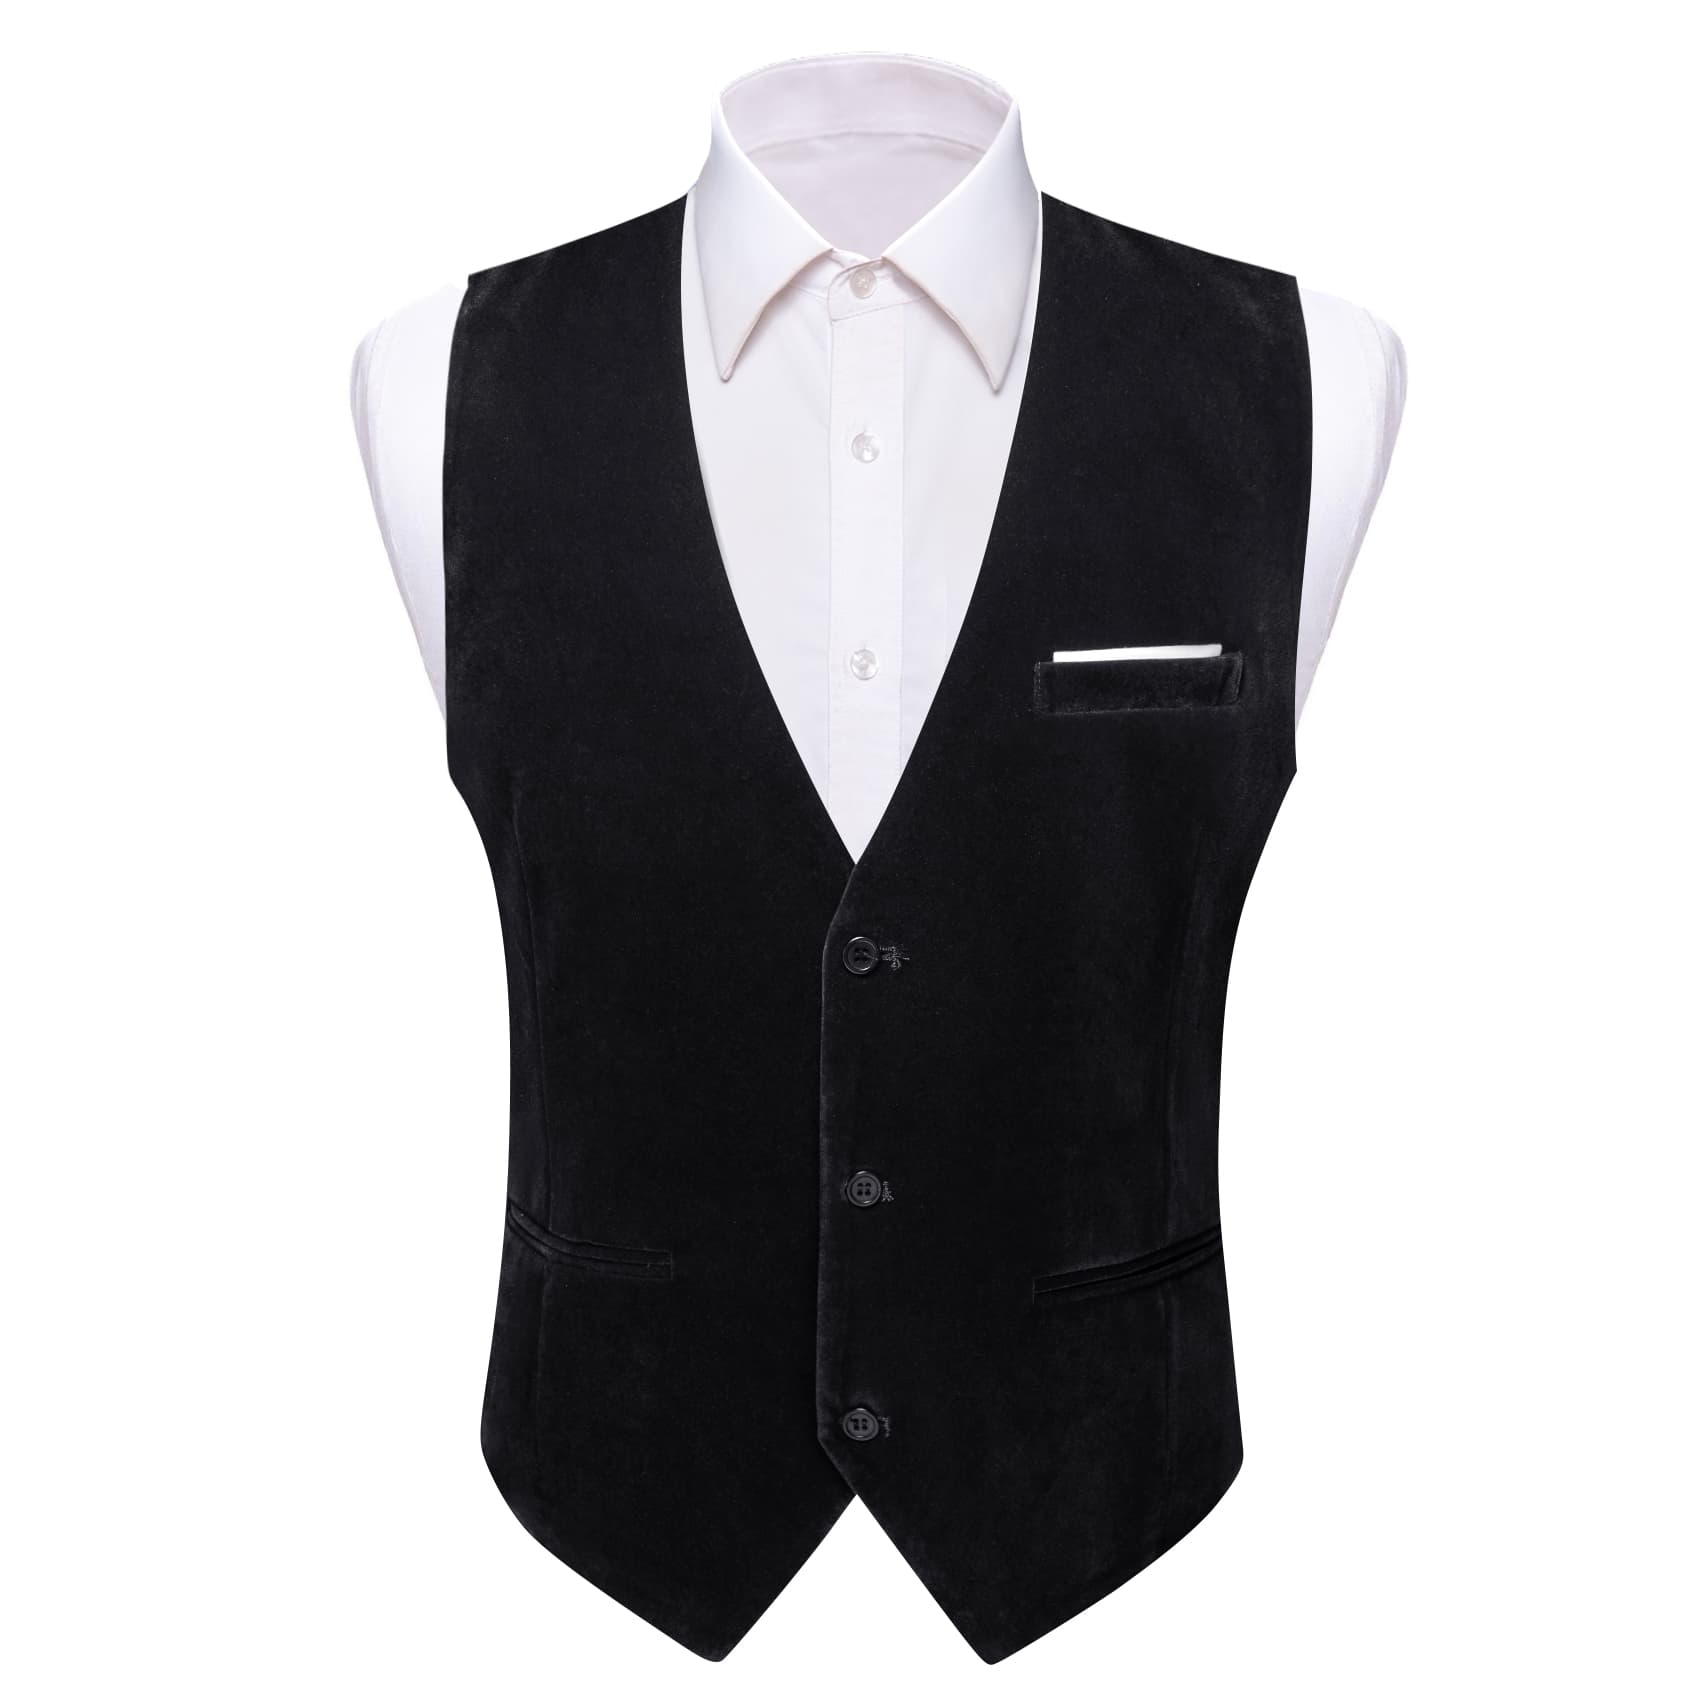 Barry Wang Waistcoat for Men Solid Black Velvet Vest